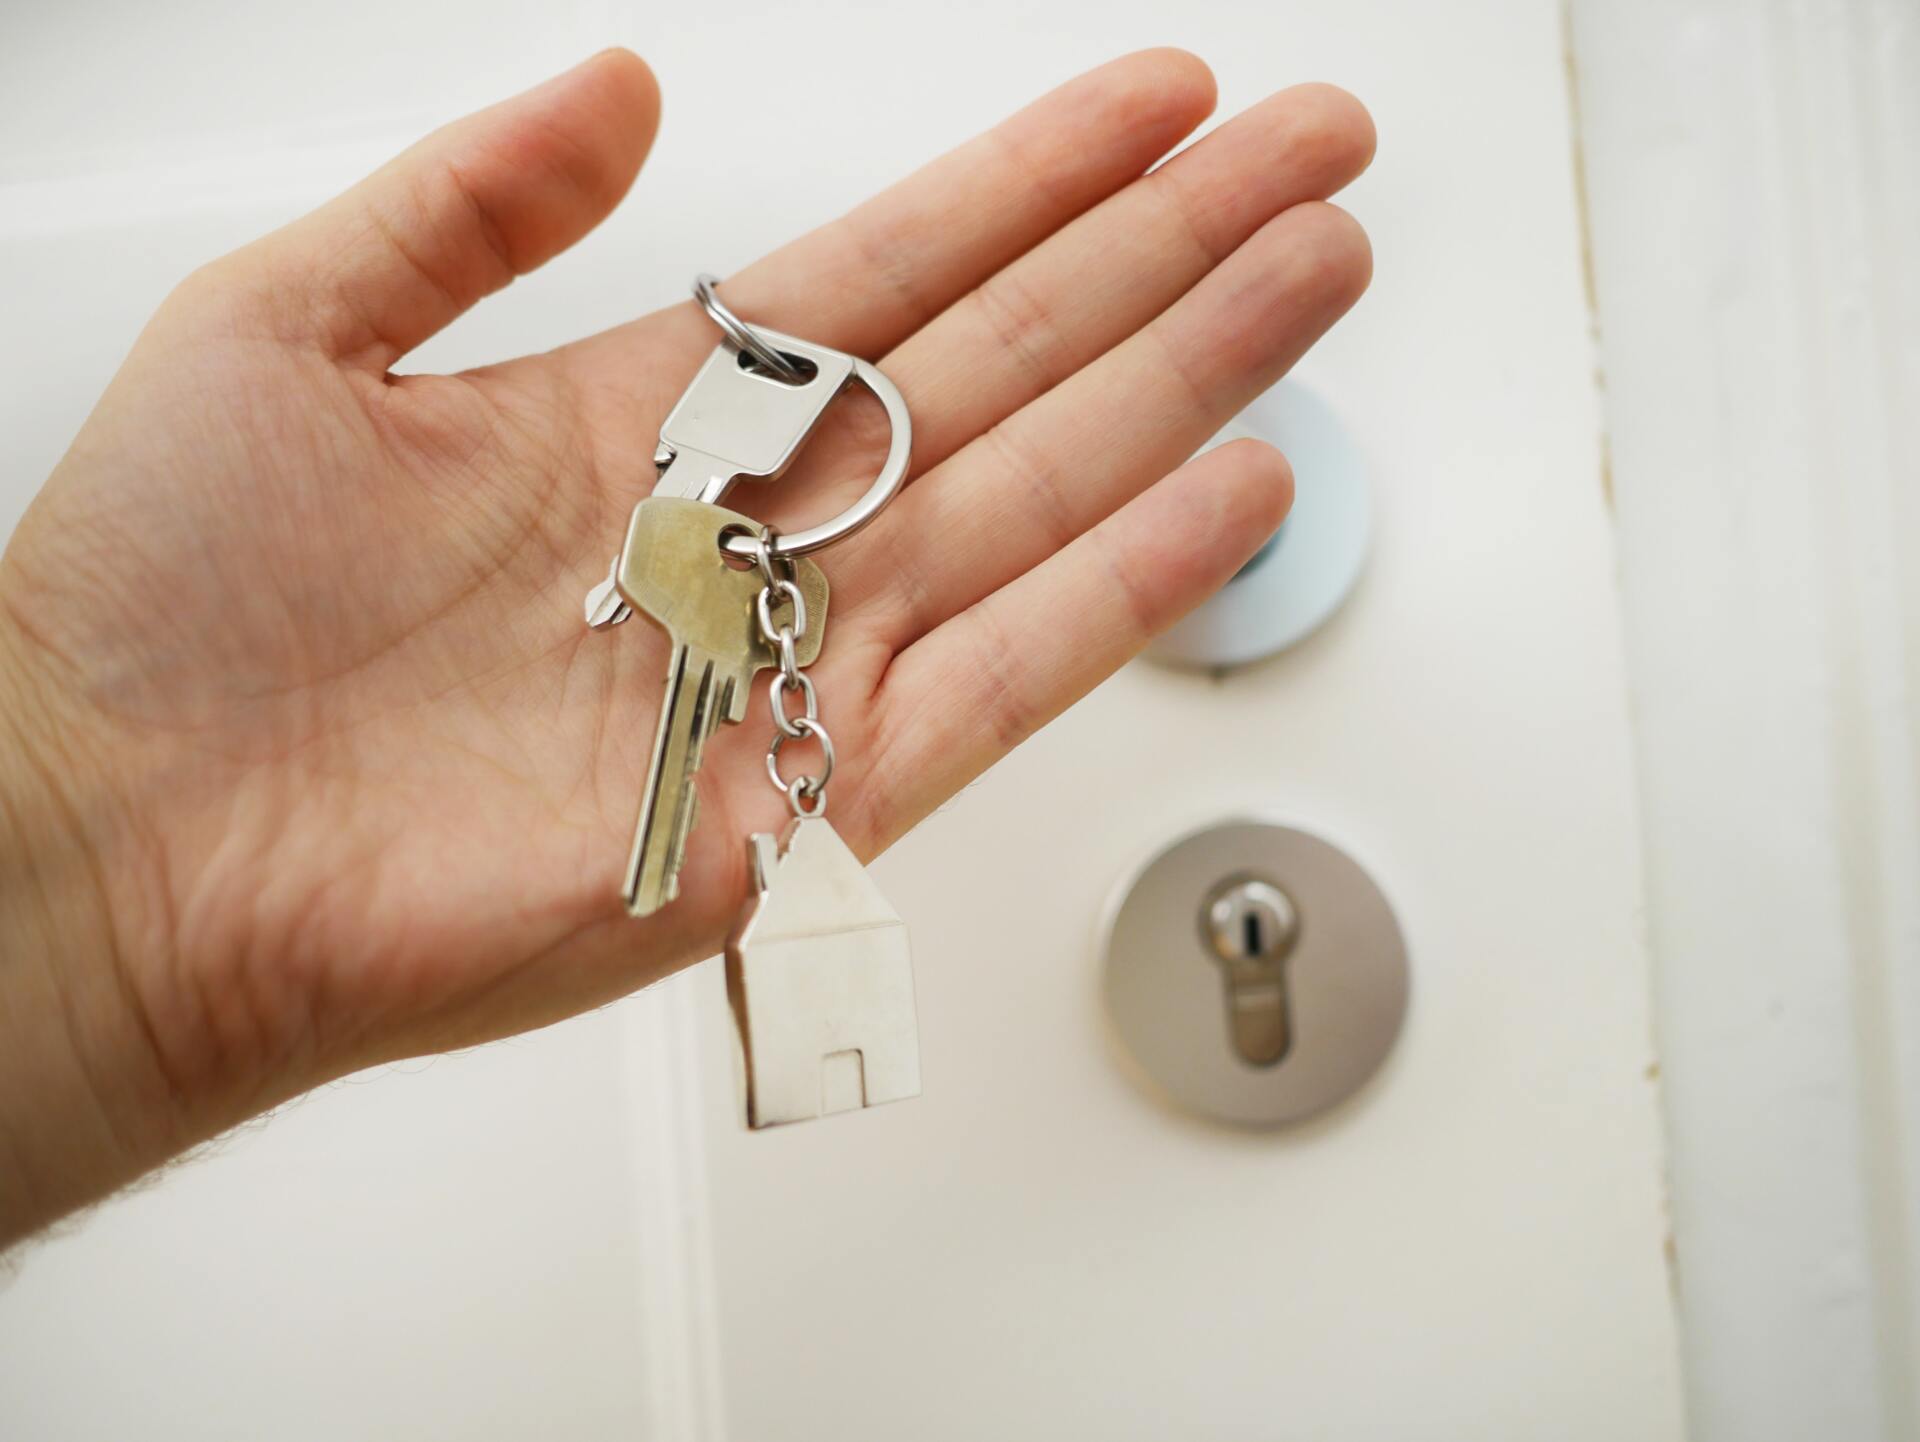 Hand Holding House Keys In Front of Door Lock & Handle